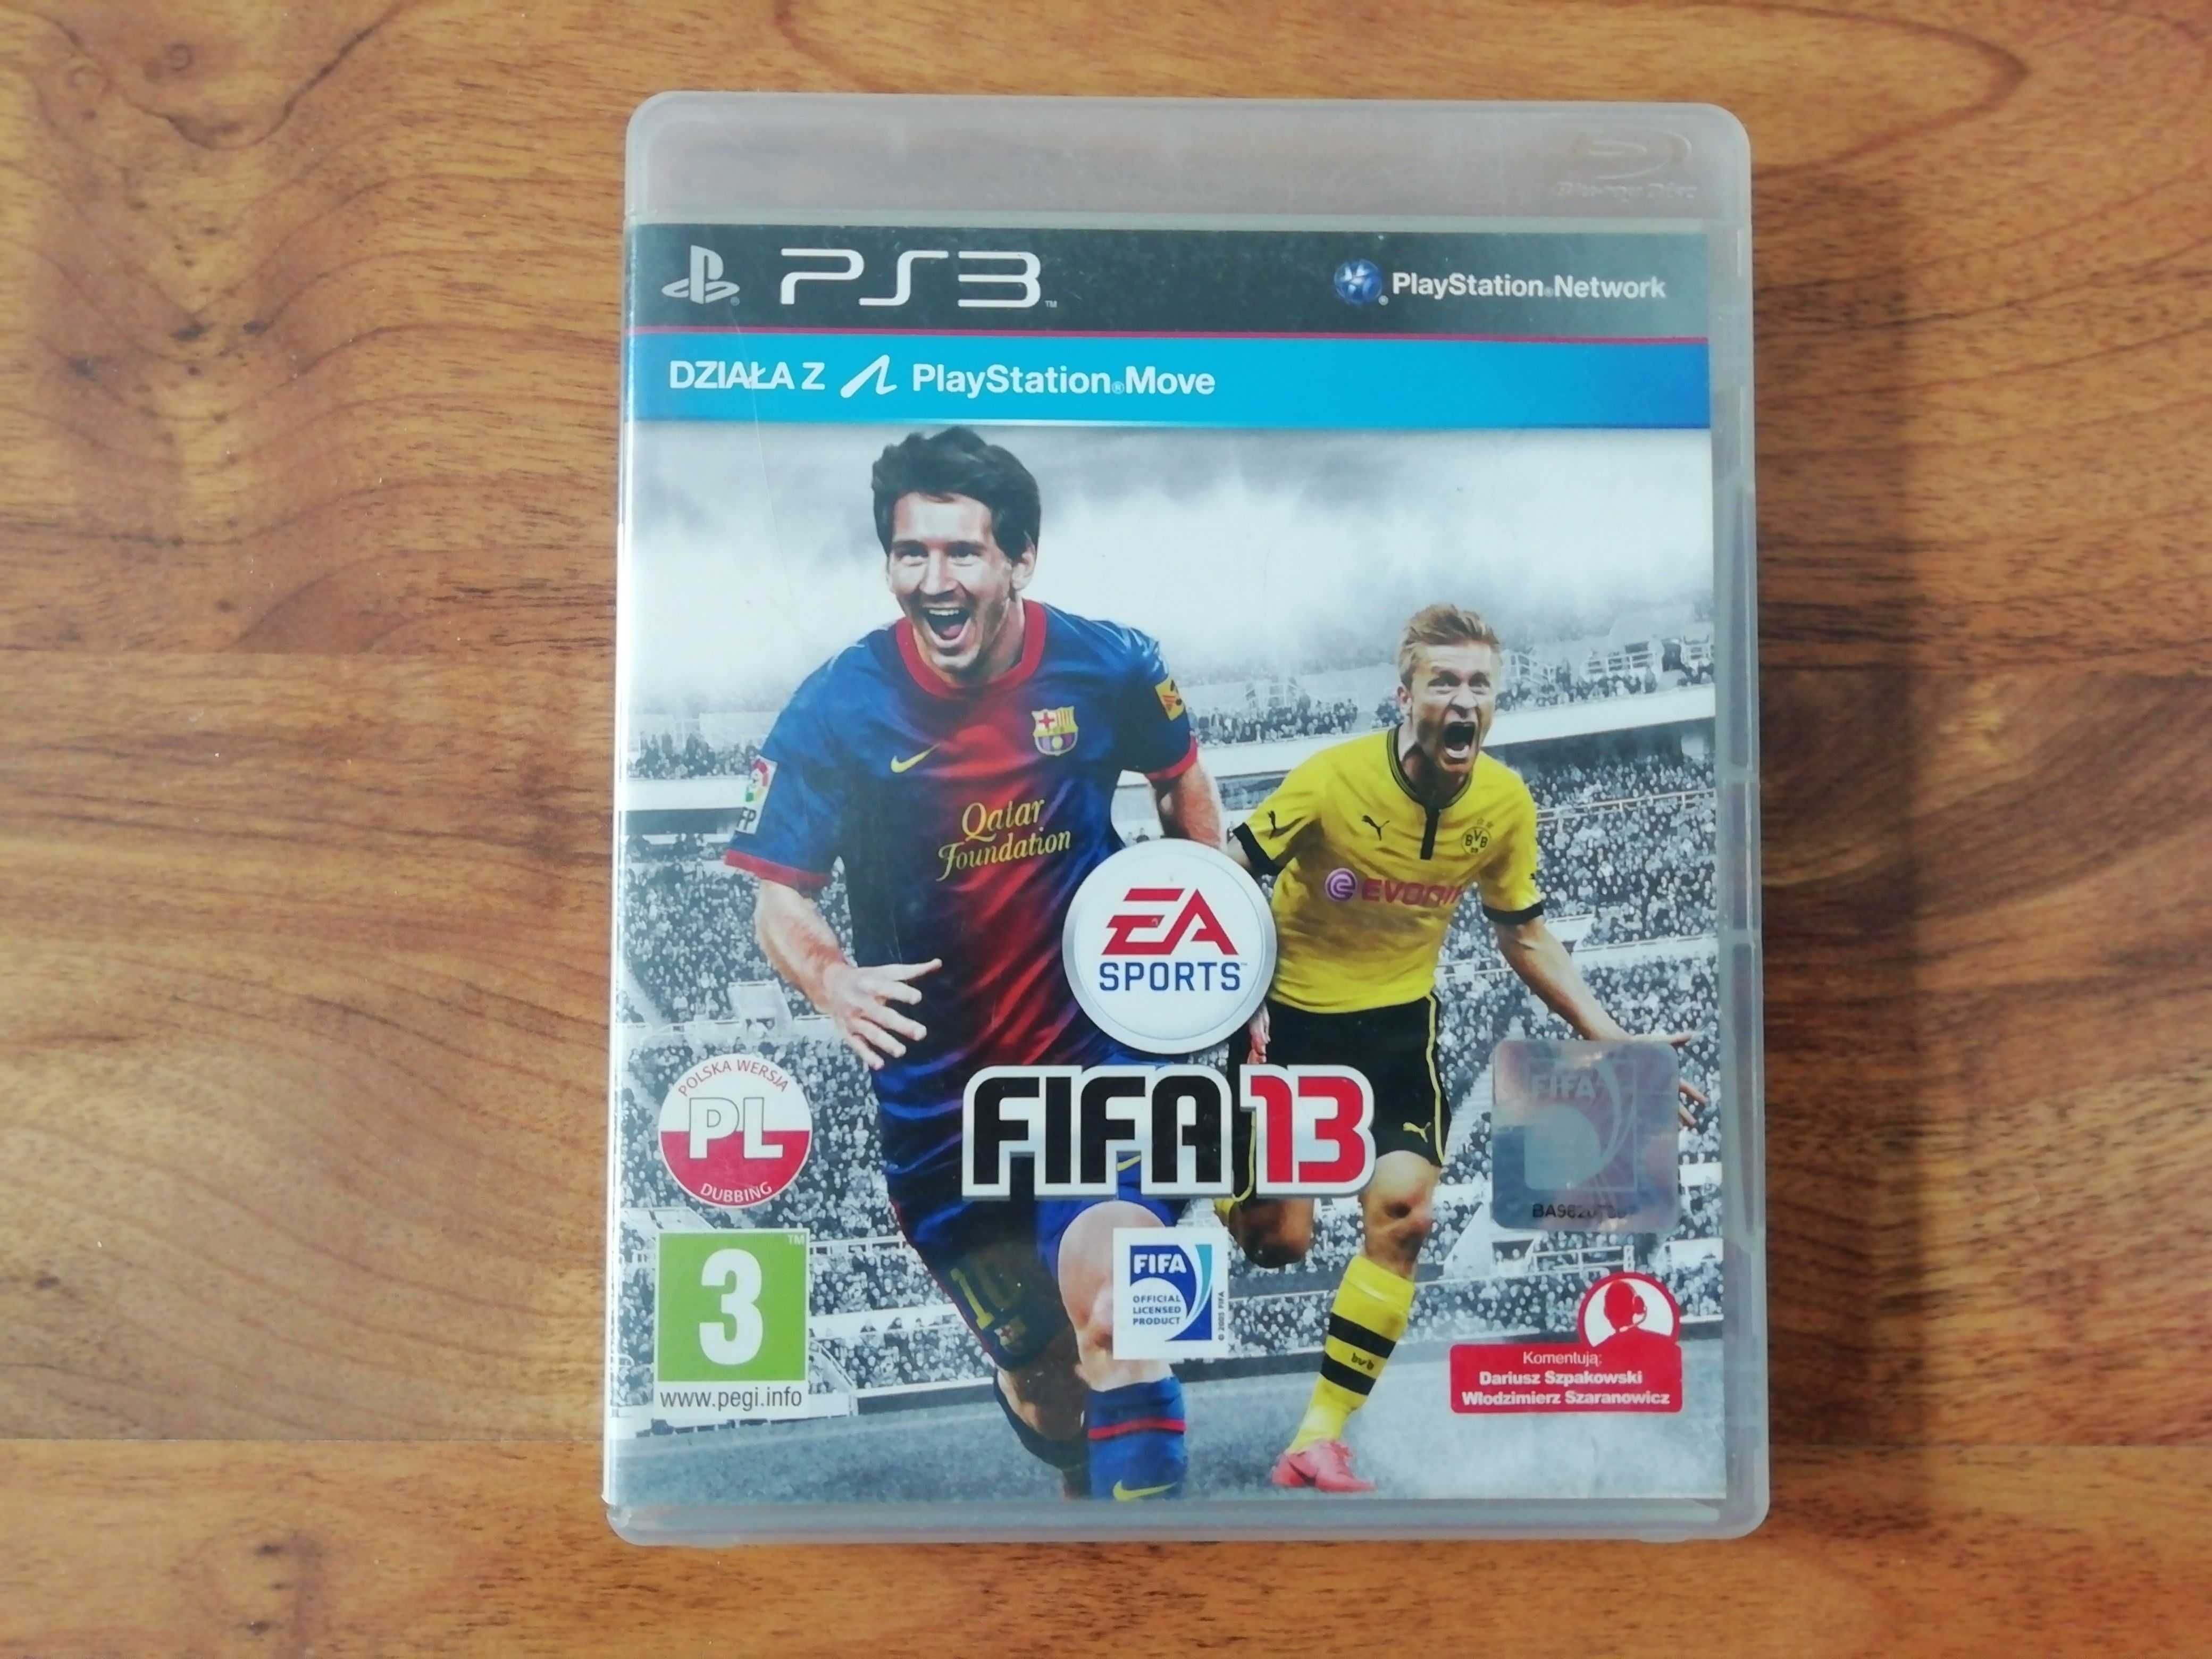 FIFA 09, FIFA 11, FIFA 12, FIFA 13, FIFA 14, FIFA 15